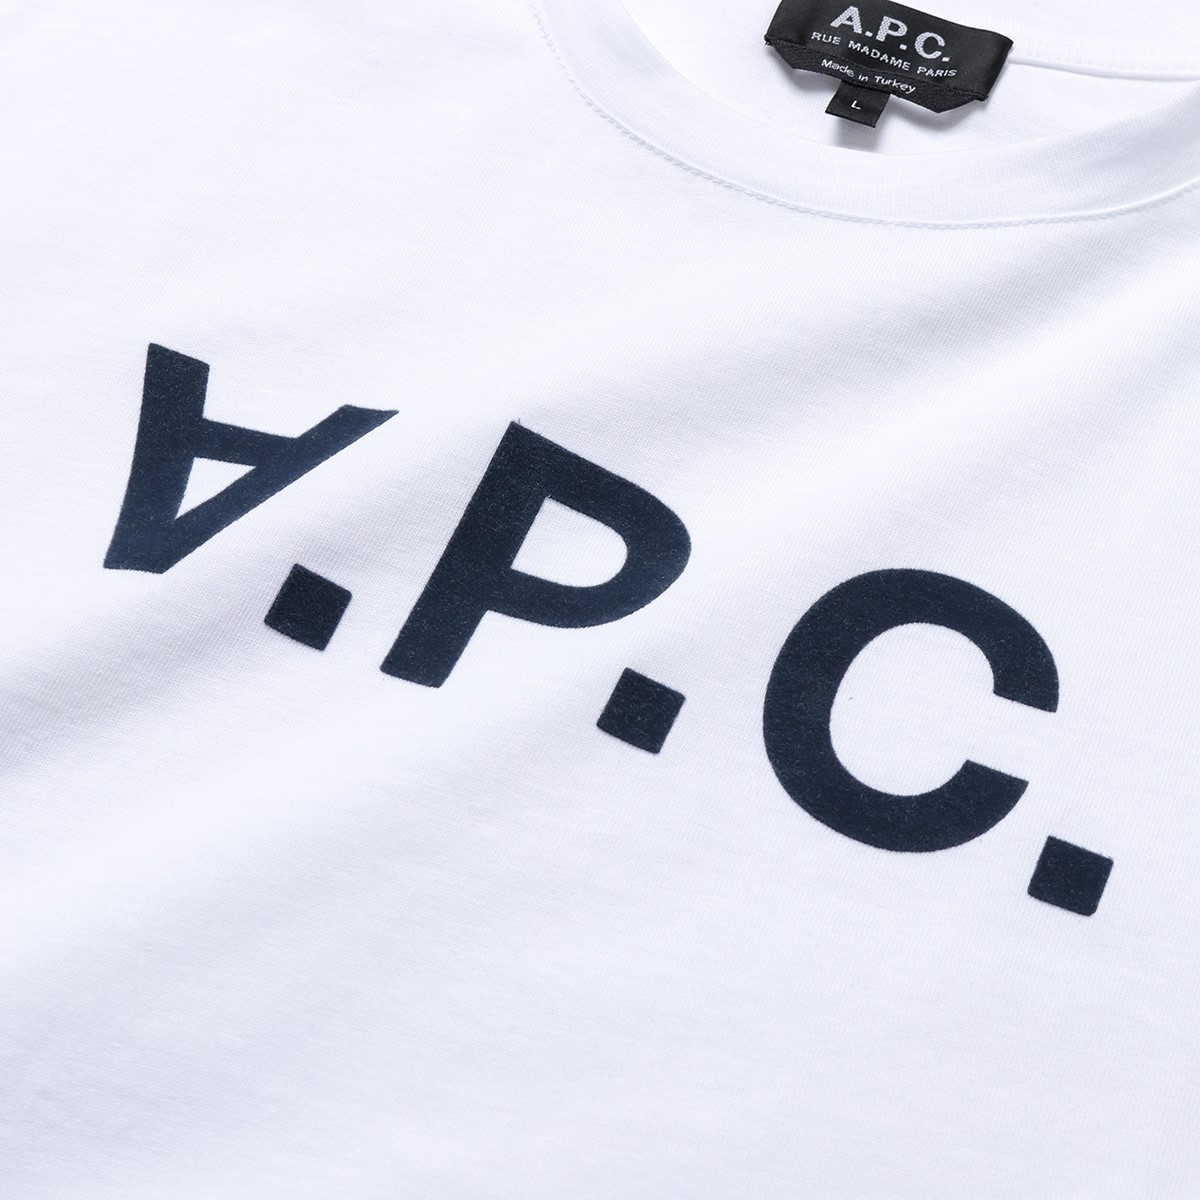 APC A.P.C. アーペーセー COBQX H26586 VPC シャツ クルーネック 半袖 Tシャツ カットソー ロゴT  DARKNAVY/ホワイト×ネイビー メンズ【2buy】 | インポートセレクト musee